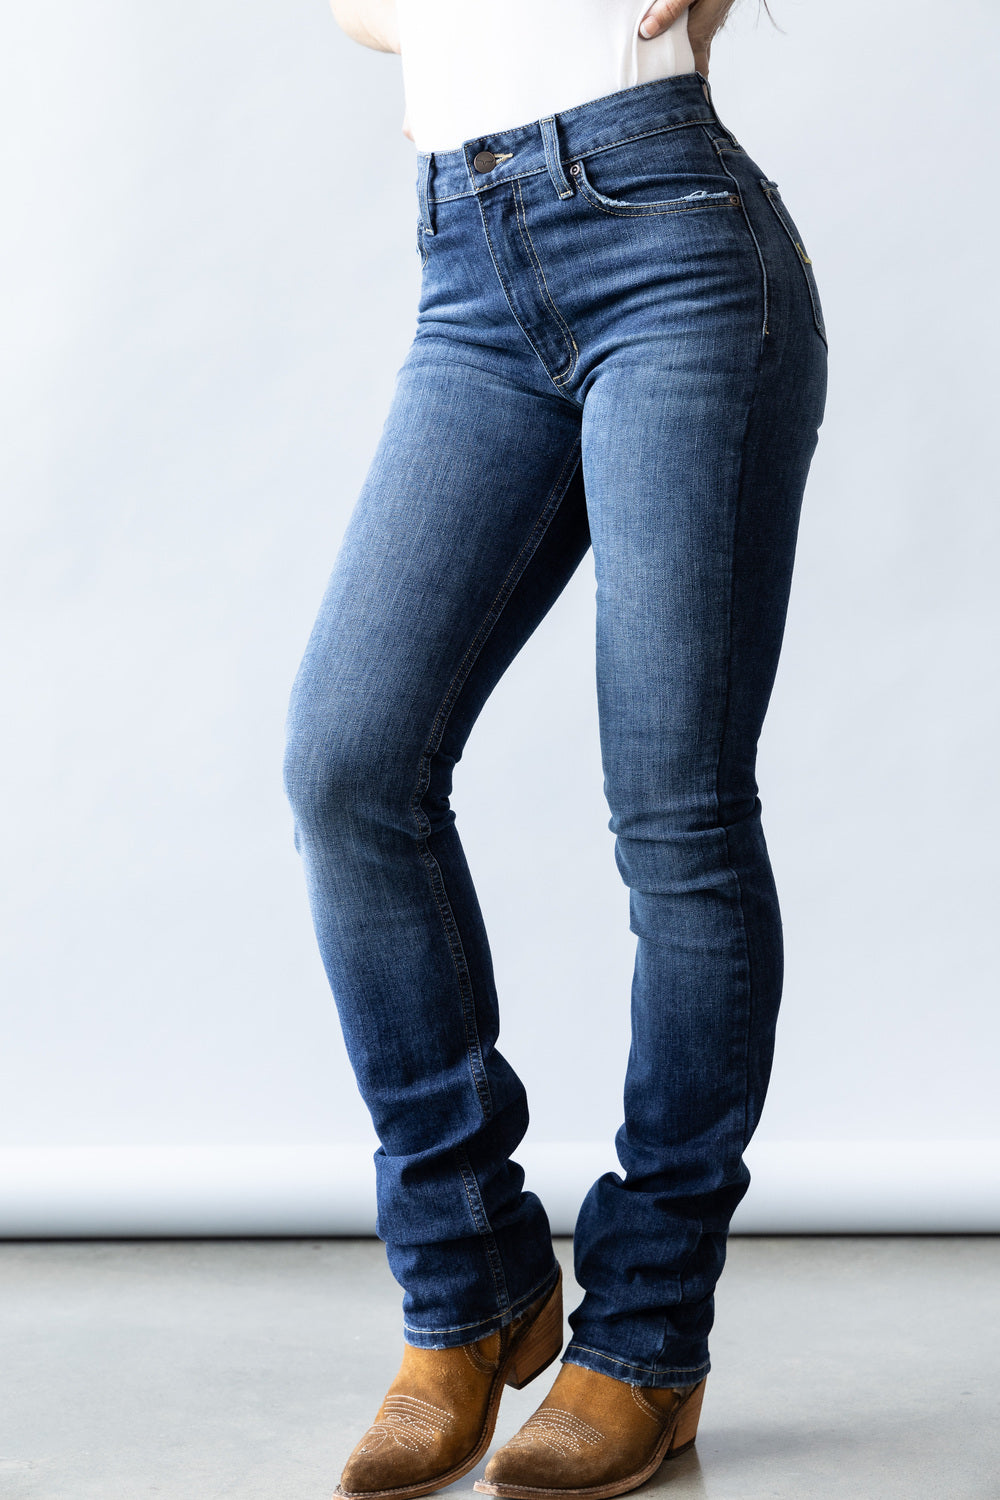 Kimes Ranch® Ladies Sarah Hi-Rise Slim Boot Cut Jeans